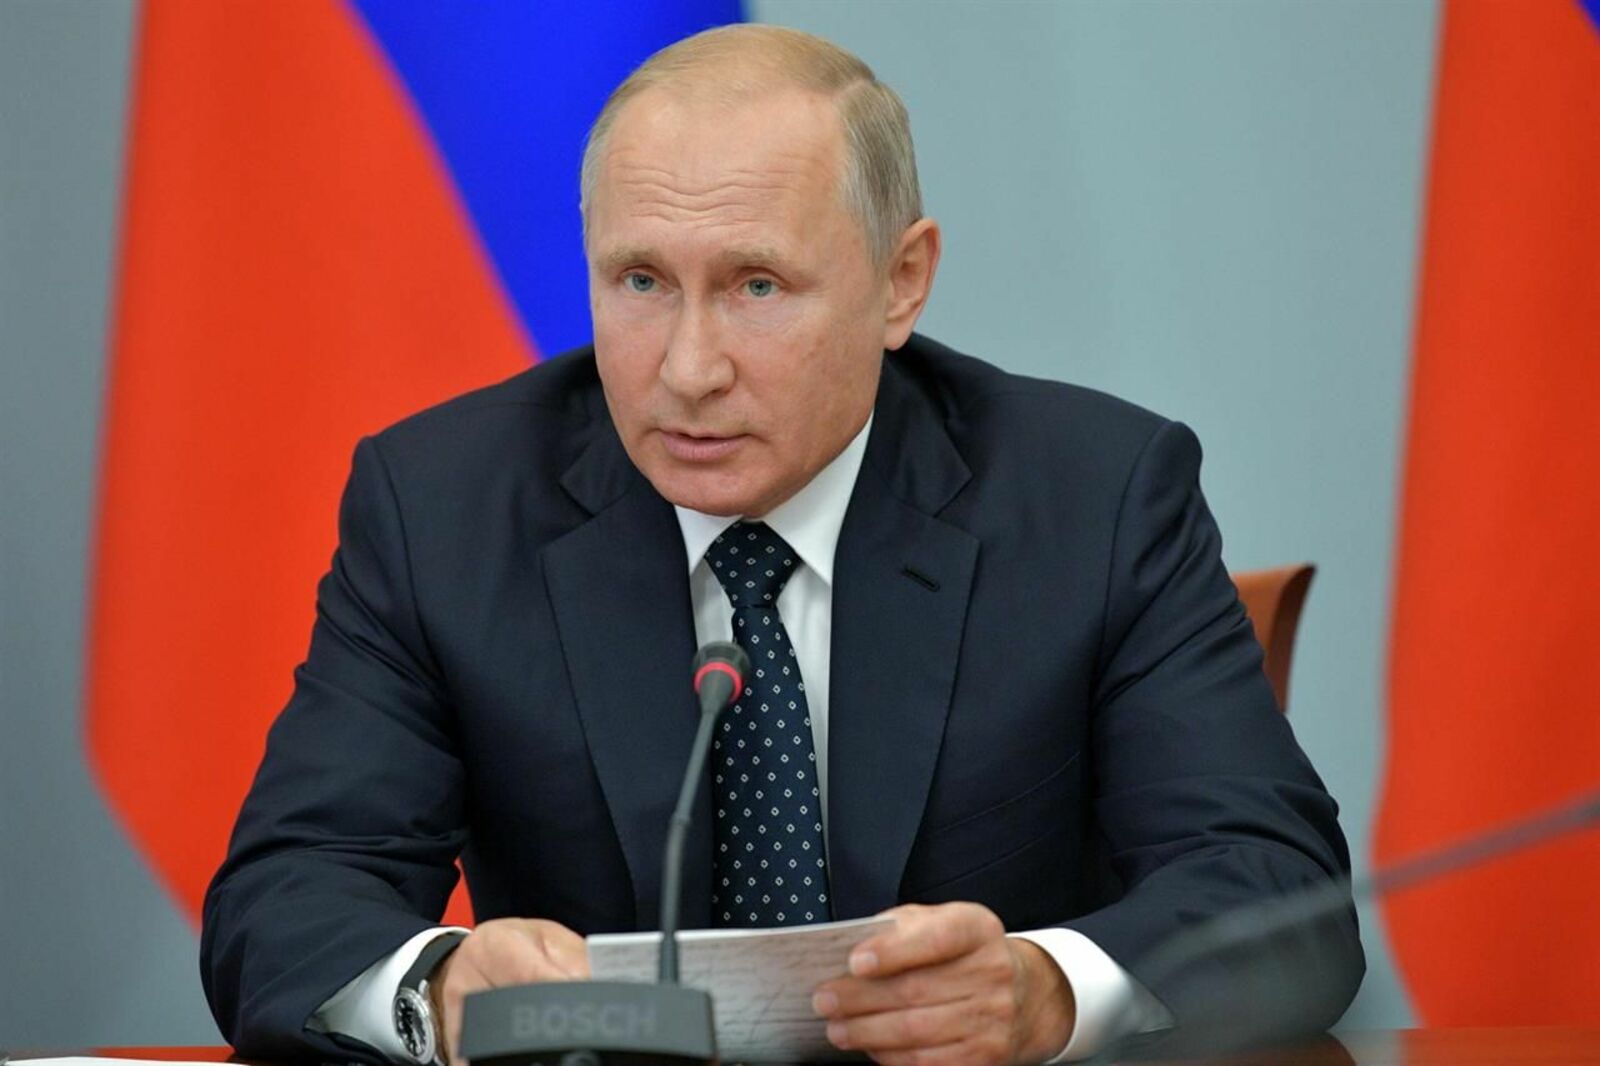 Минздрав подготовит изменения в оплате труда медиков после заявления Путина